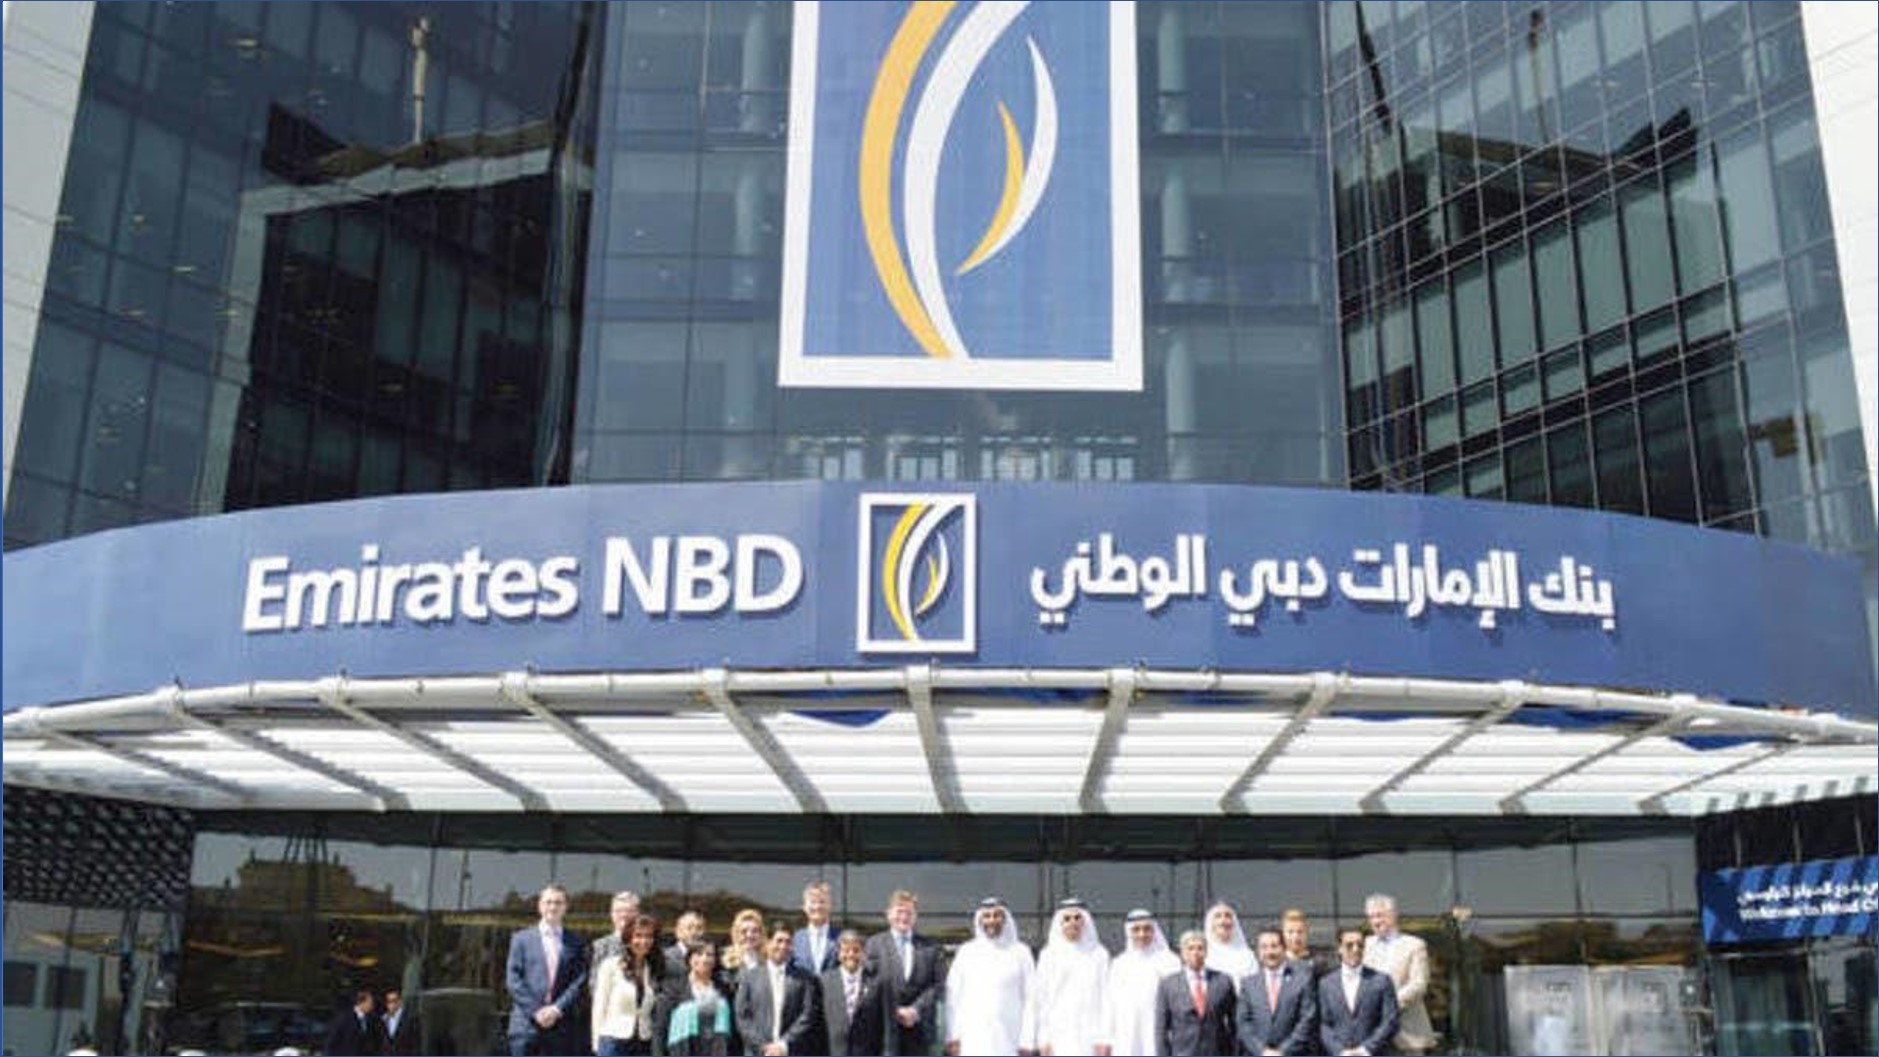 بنك الإمارات دبي الوطني - 15000 وظيفة